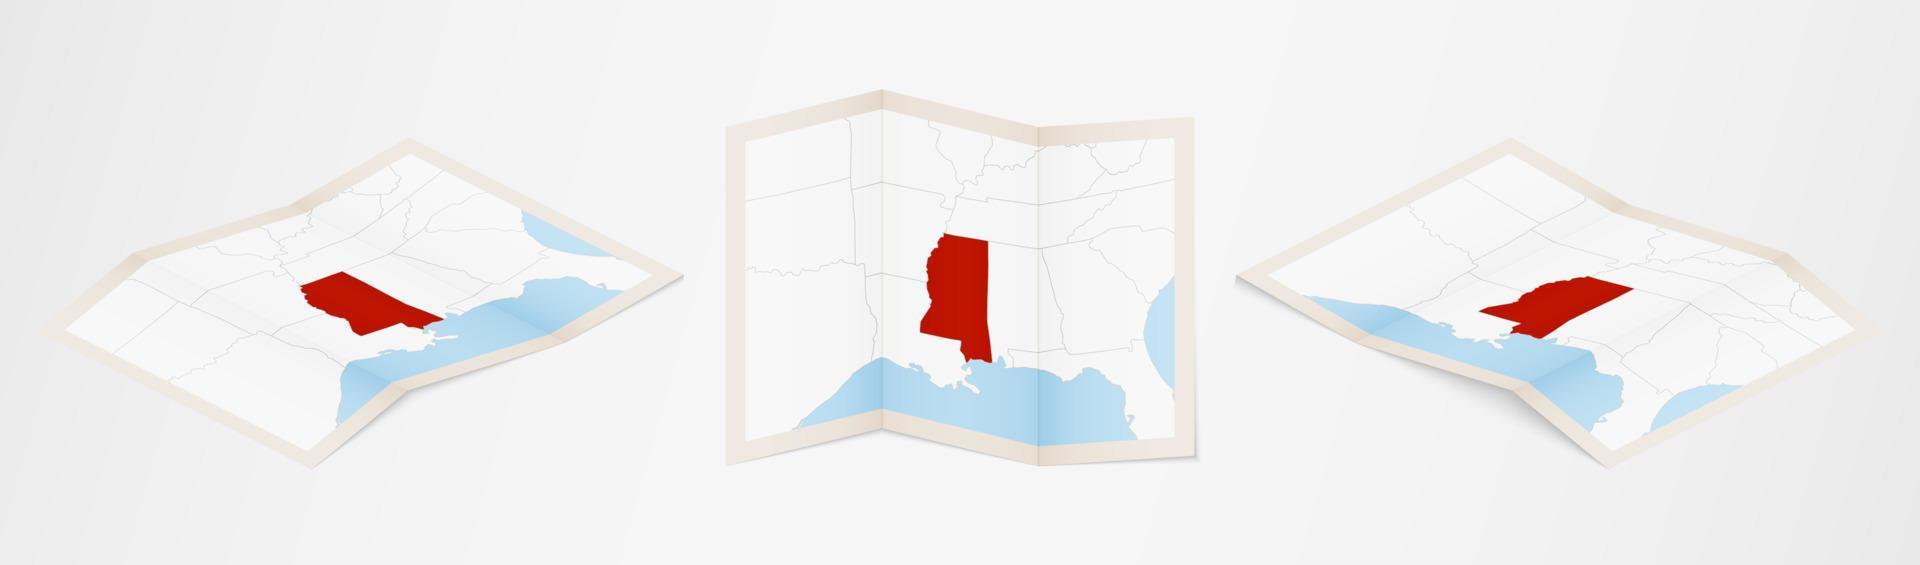 gevouwen kaart van Mississippi in drie verschillend versies. vector